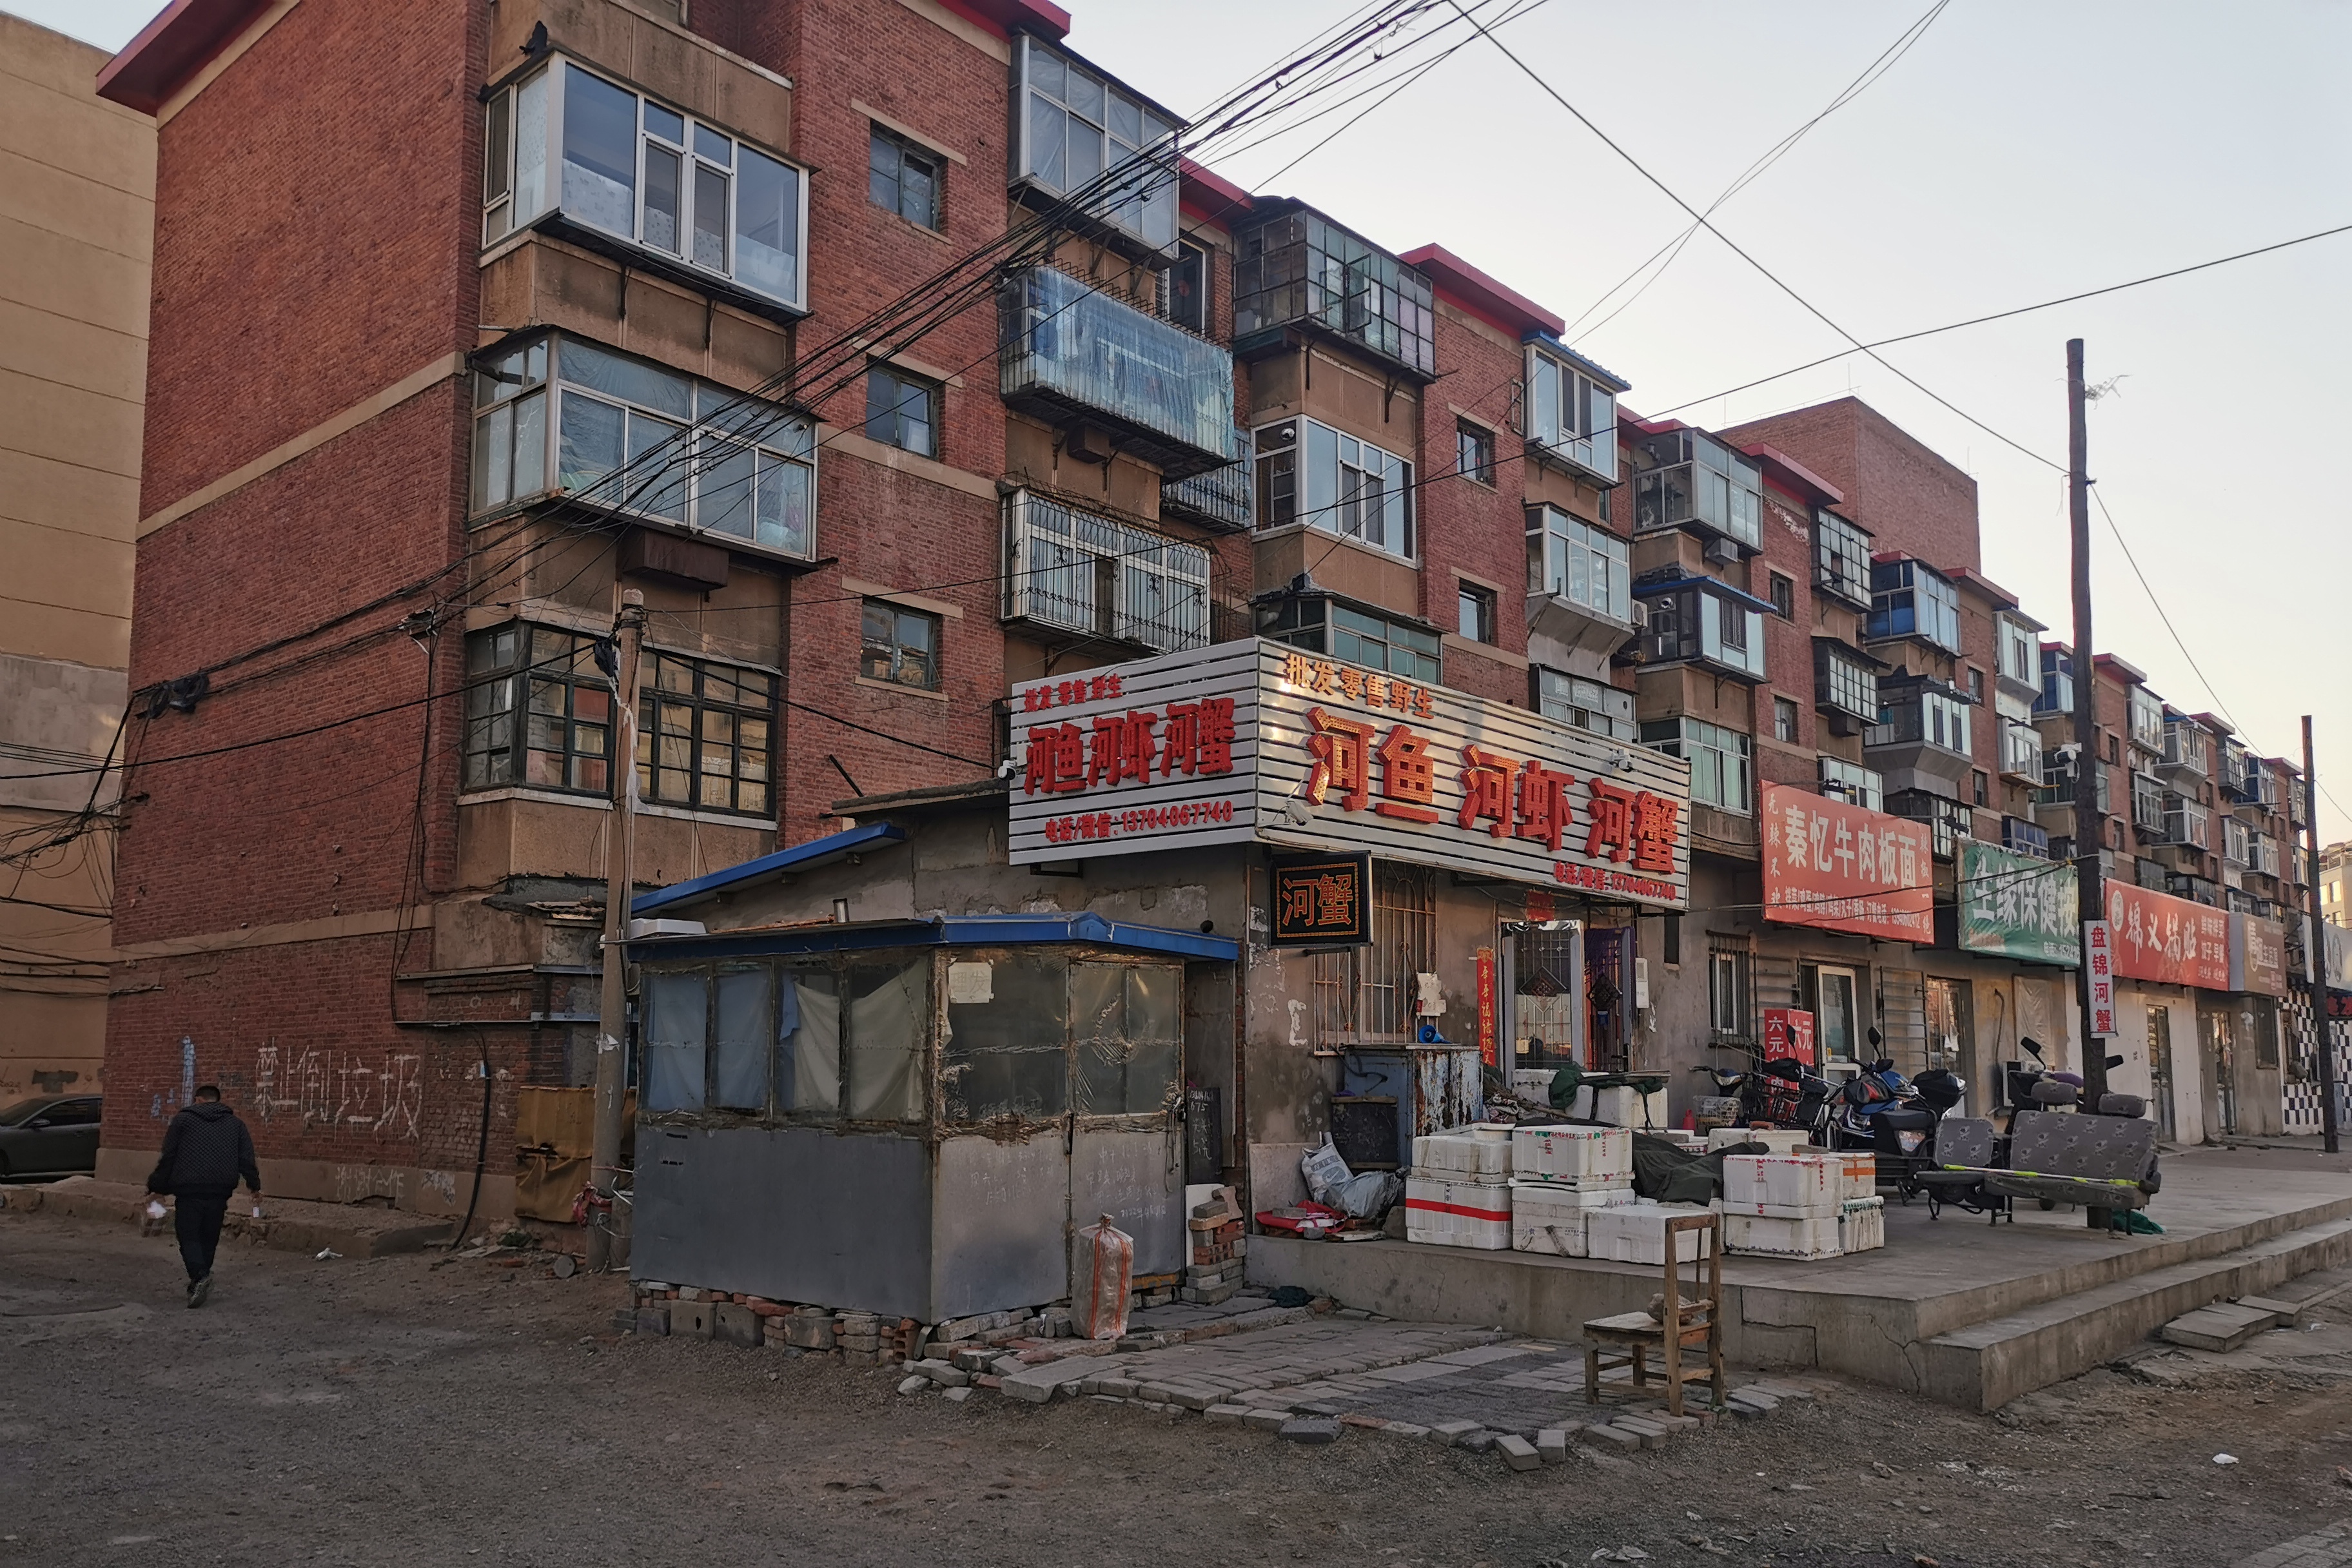 马家市场附近的这几栋老楼,是不是锦州最老的居民楼?还能拆迁么